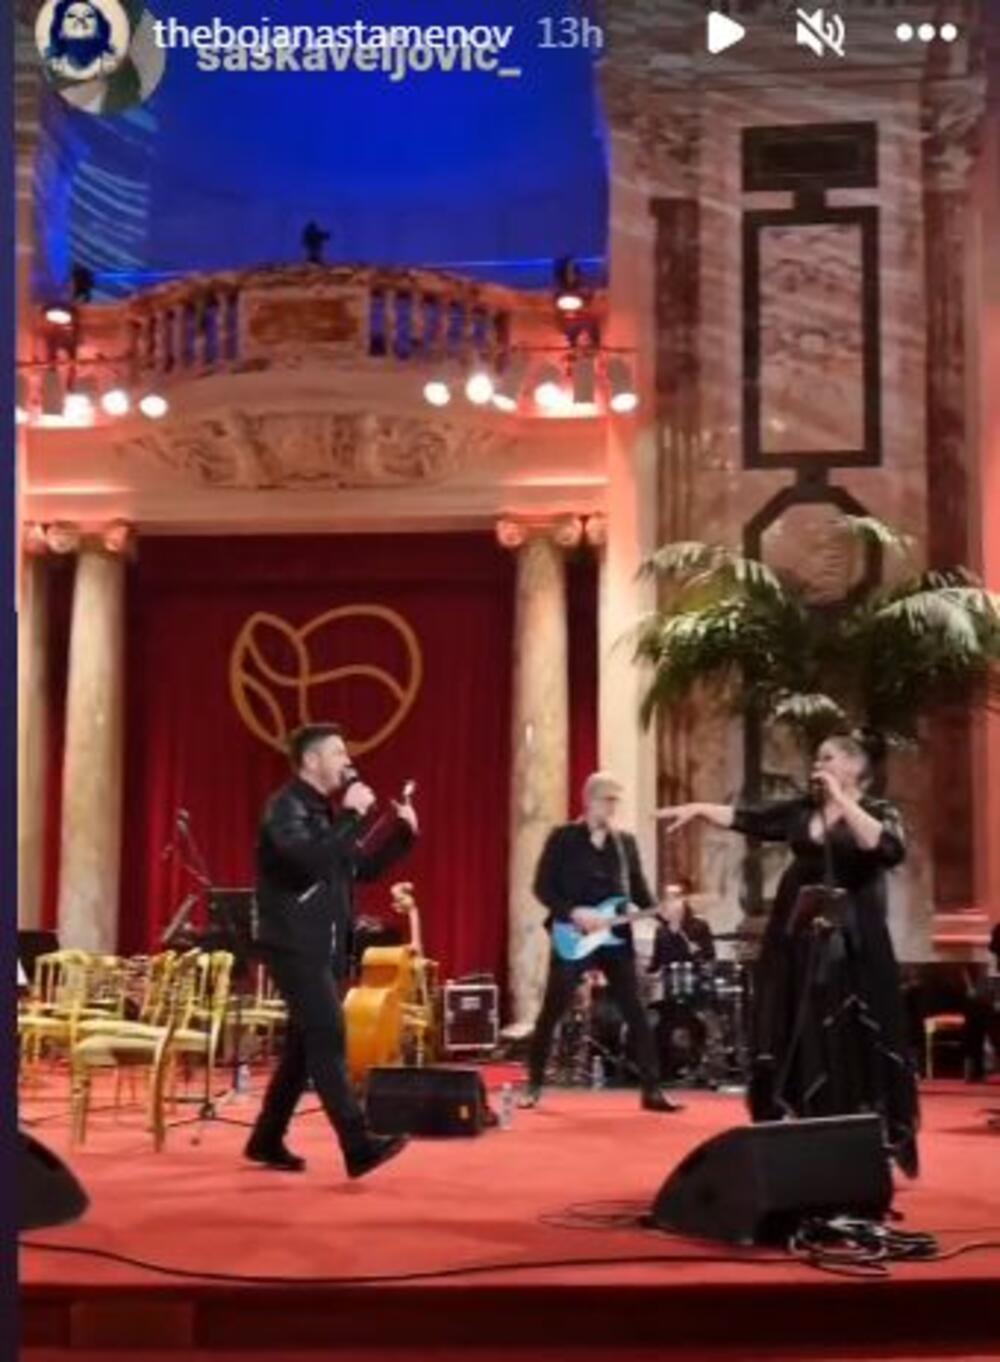 <p>Pevačica Bojana Stamenov oduševila je sve prisutne svojim glasom, ali i stasom na Svetosavskom balu. Koja haljina vam se više dopada?</p>